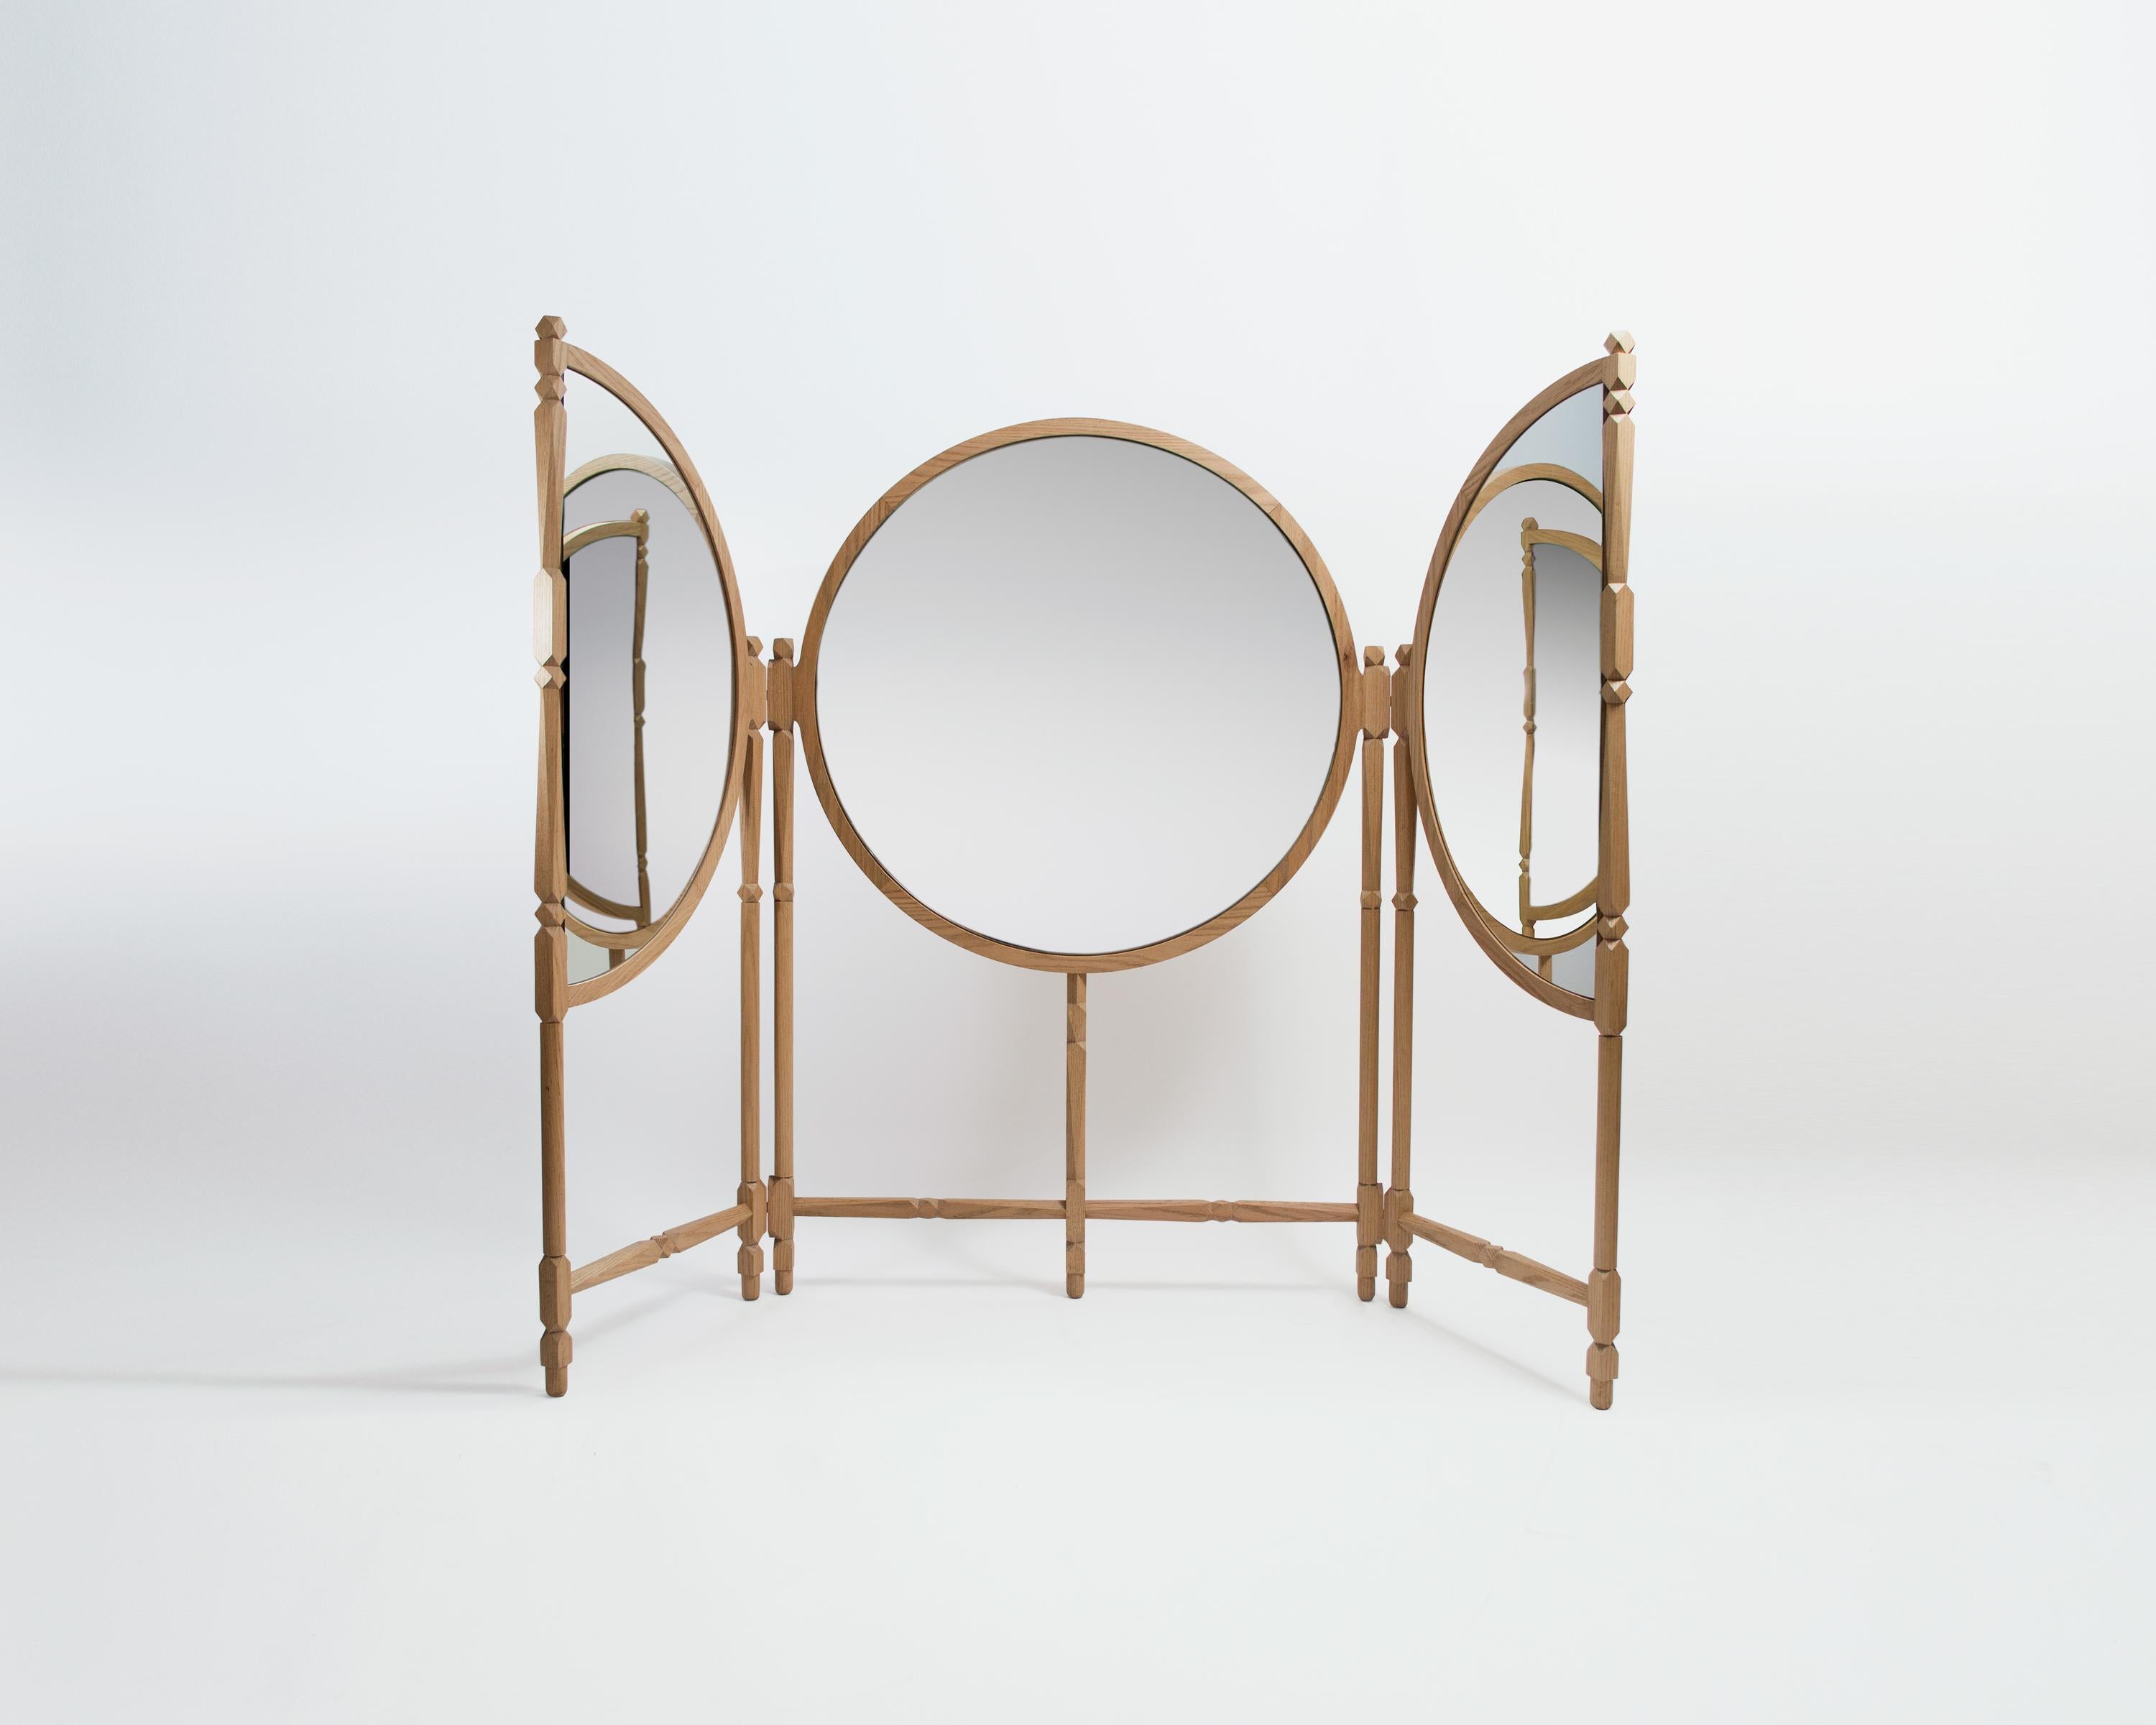 Biombo est un triptyque de miroirs au sol généreux, flatteur et intime, inspiré de l'œuvre de Leonardo Cremonini, habité par des scènes quotidiennes, tumultueuses, voire périphériques. Il manipule les reflets éphémères avec la plus grande